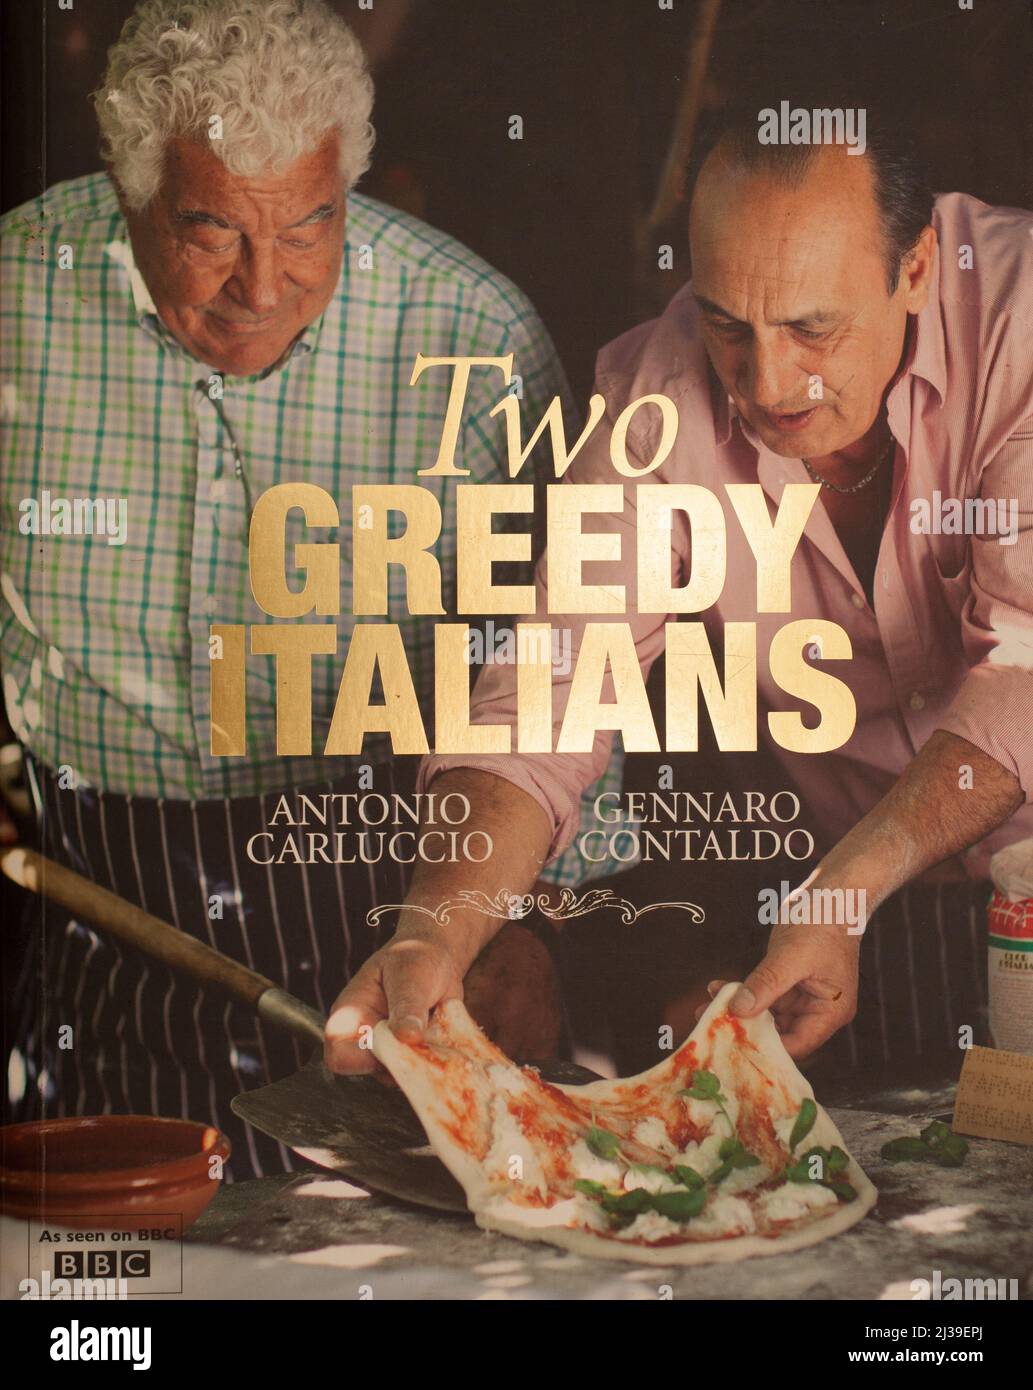 Das Buch, zwei gierige Italiener von Antonio Carlucchio und Gennaro Contaldo Stockfoto